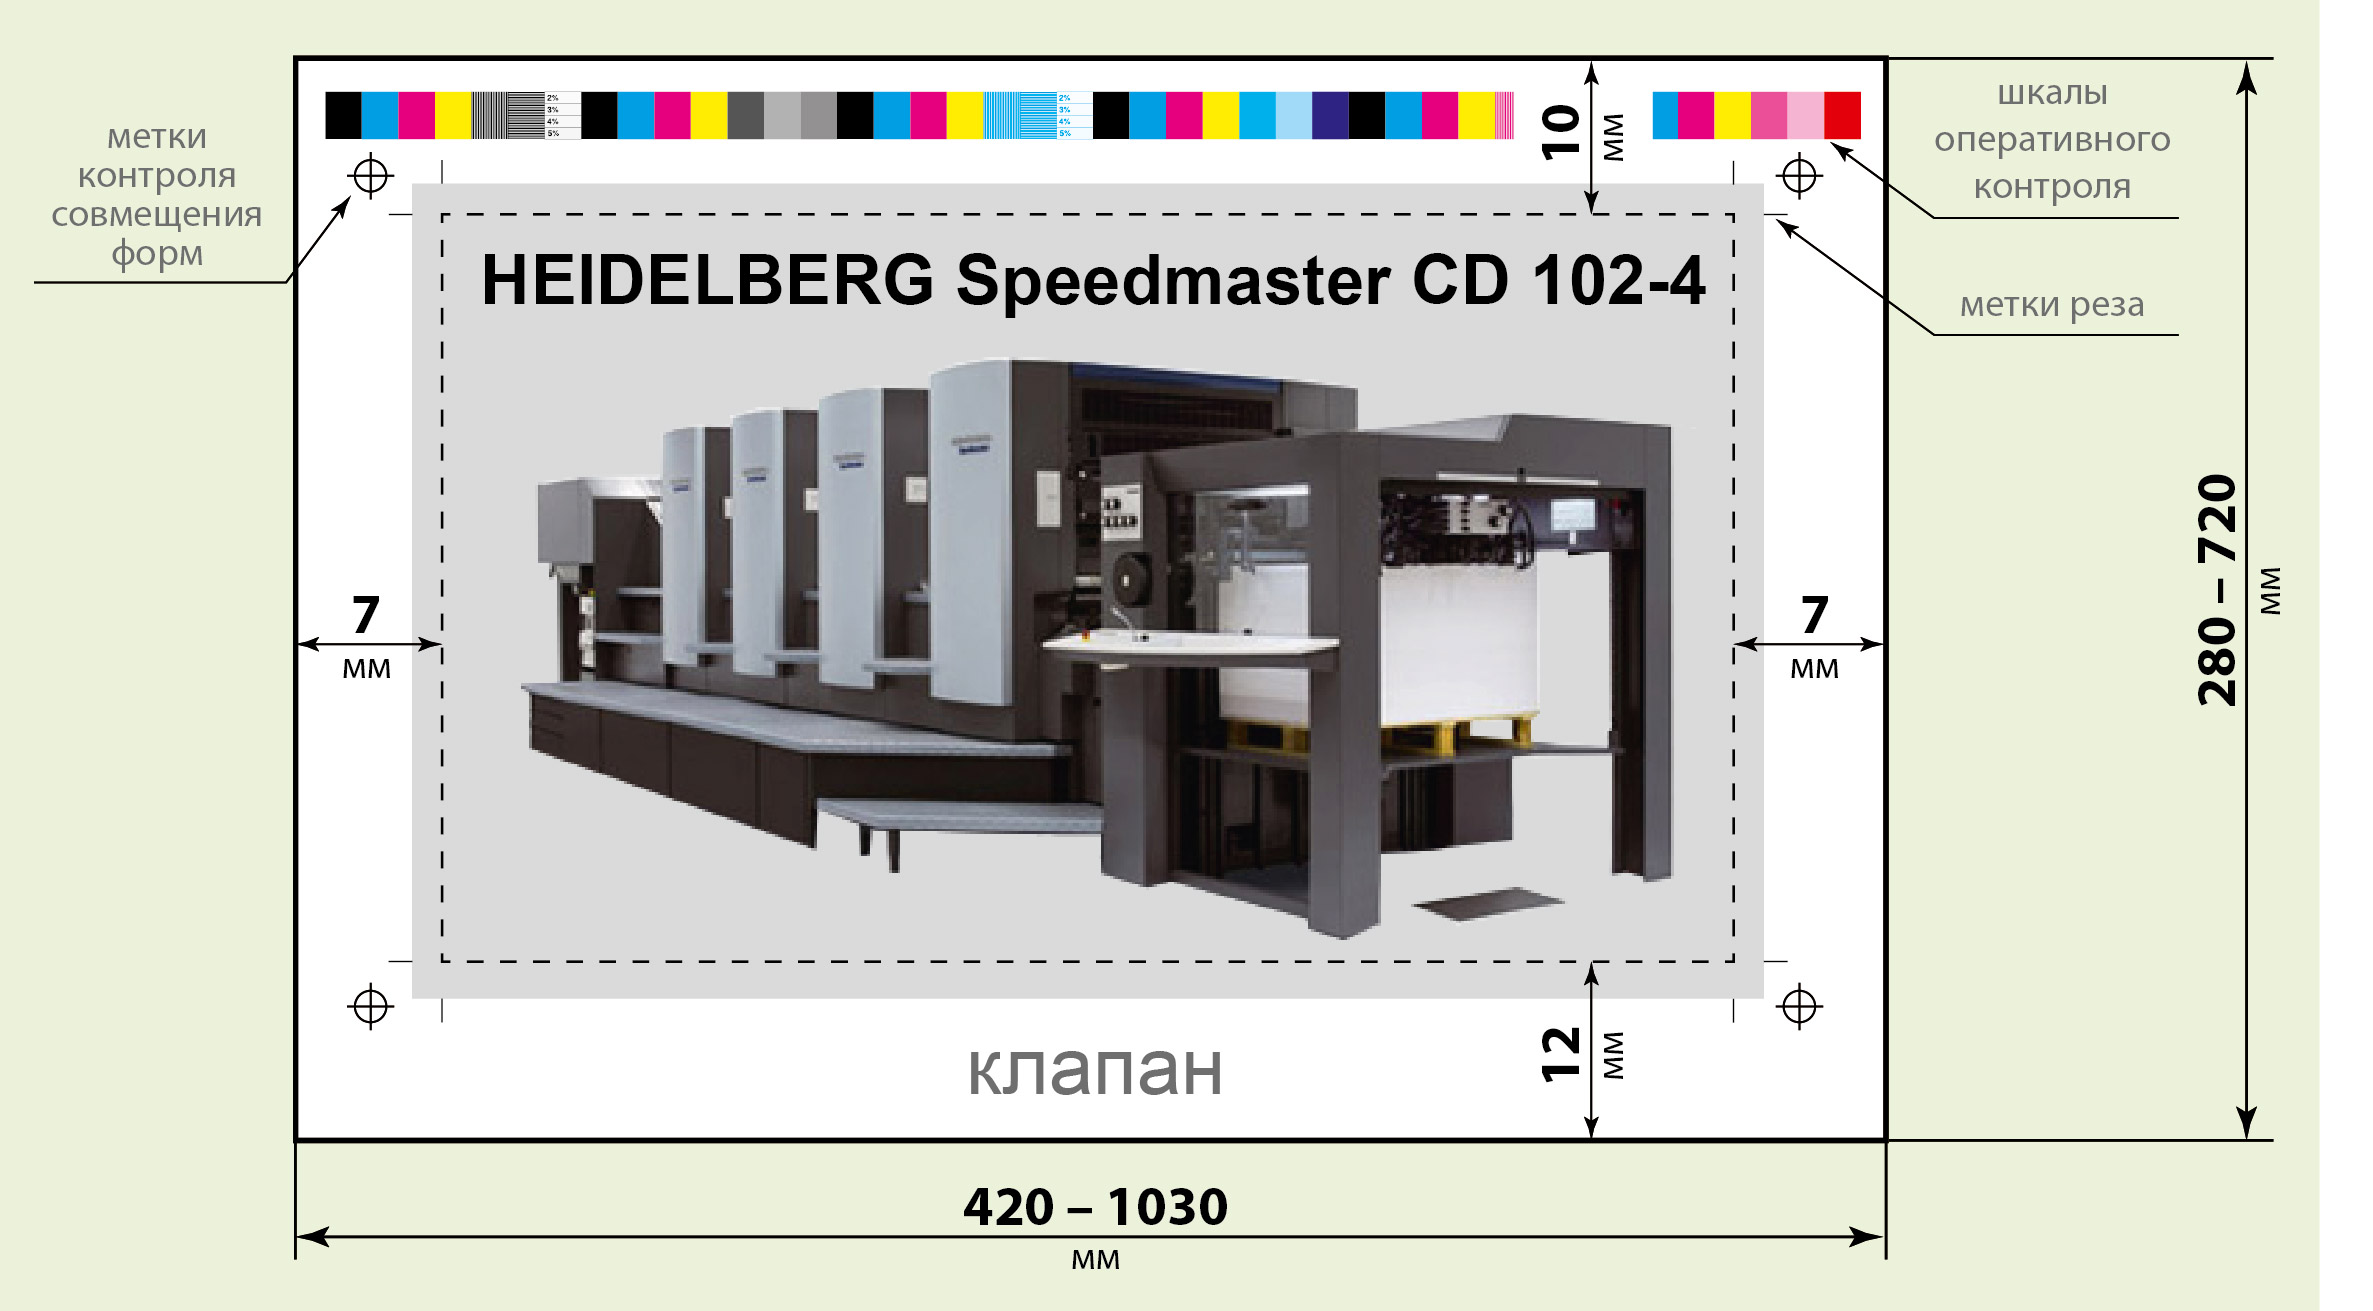 Схема печатного листа HEIDELBERG Speedmaster CD 102-4 типографии «Август Борг»